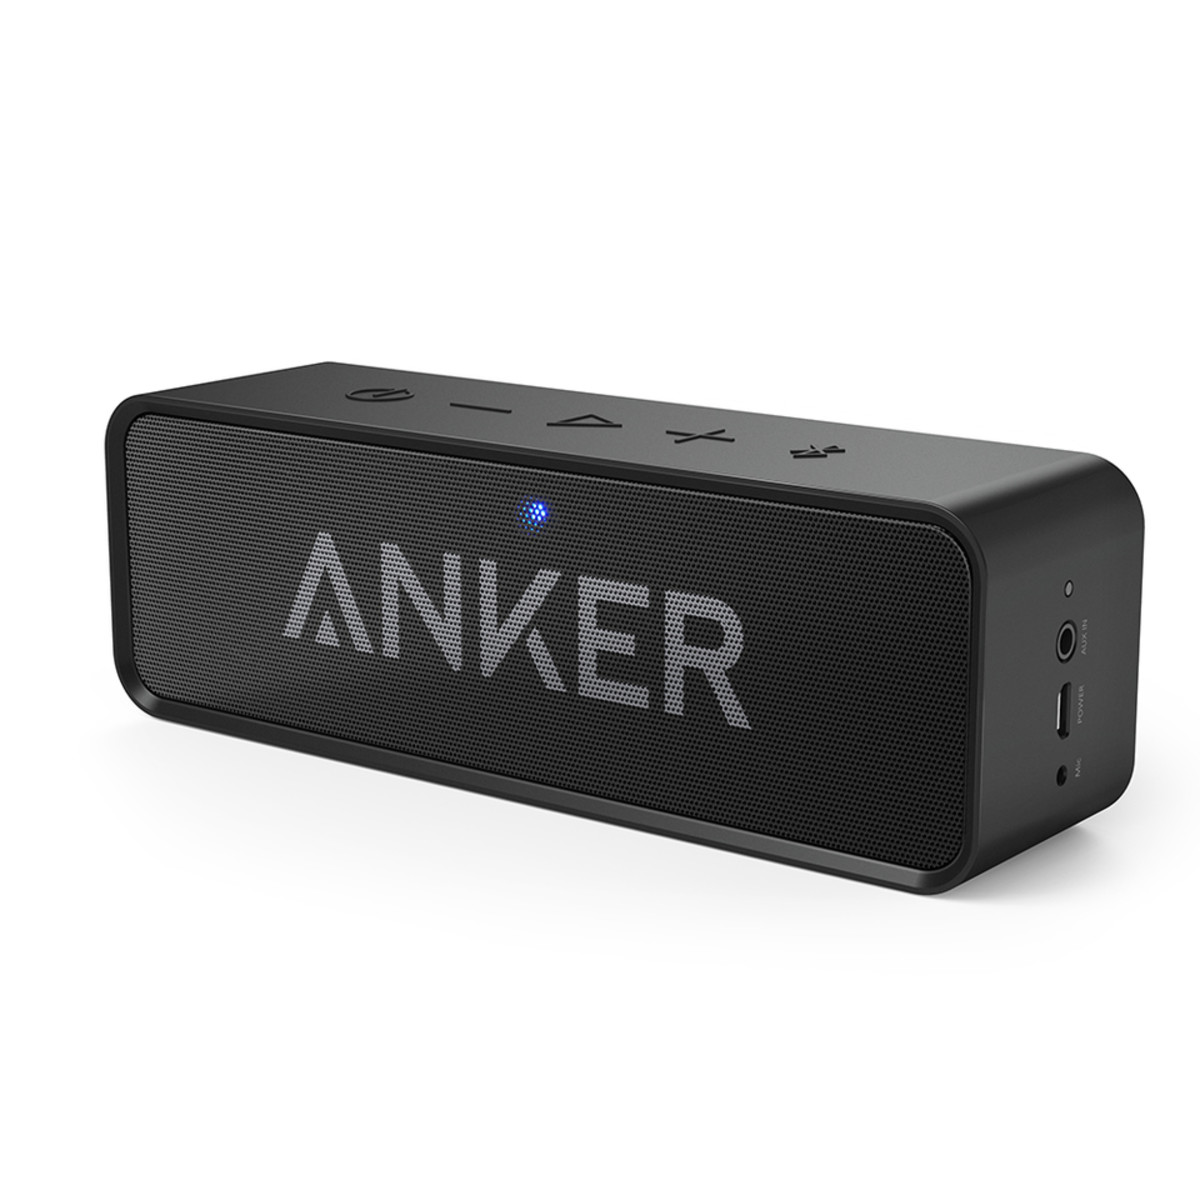 Anker SoundCore hoparlr Bluetooth 4.0' destekler ve tam arjla be saate kadar srebilir.